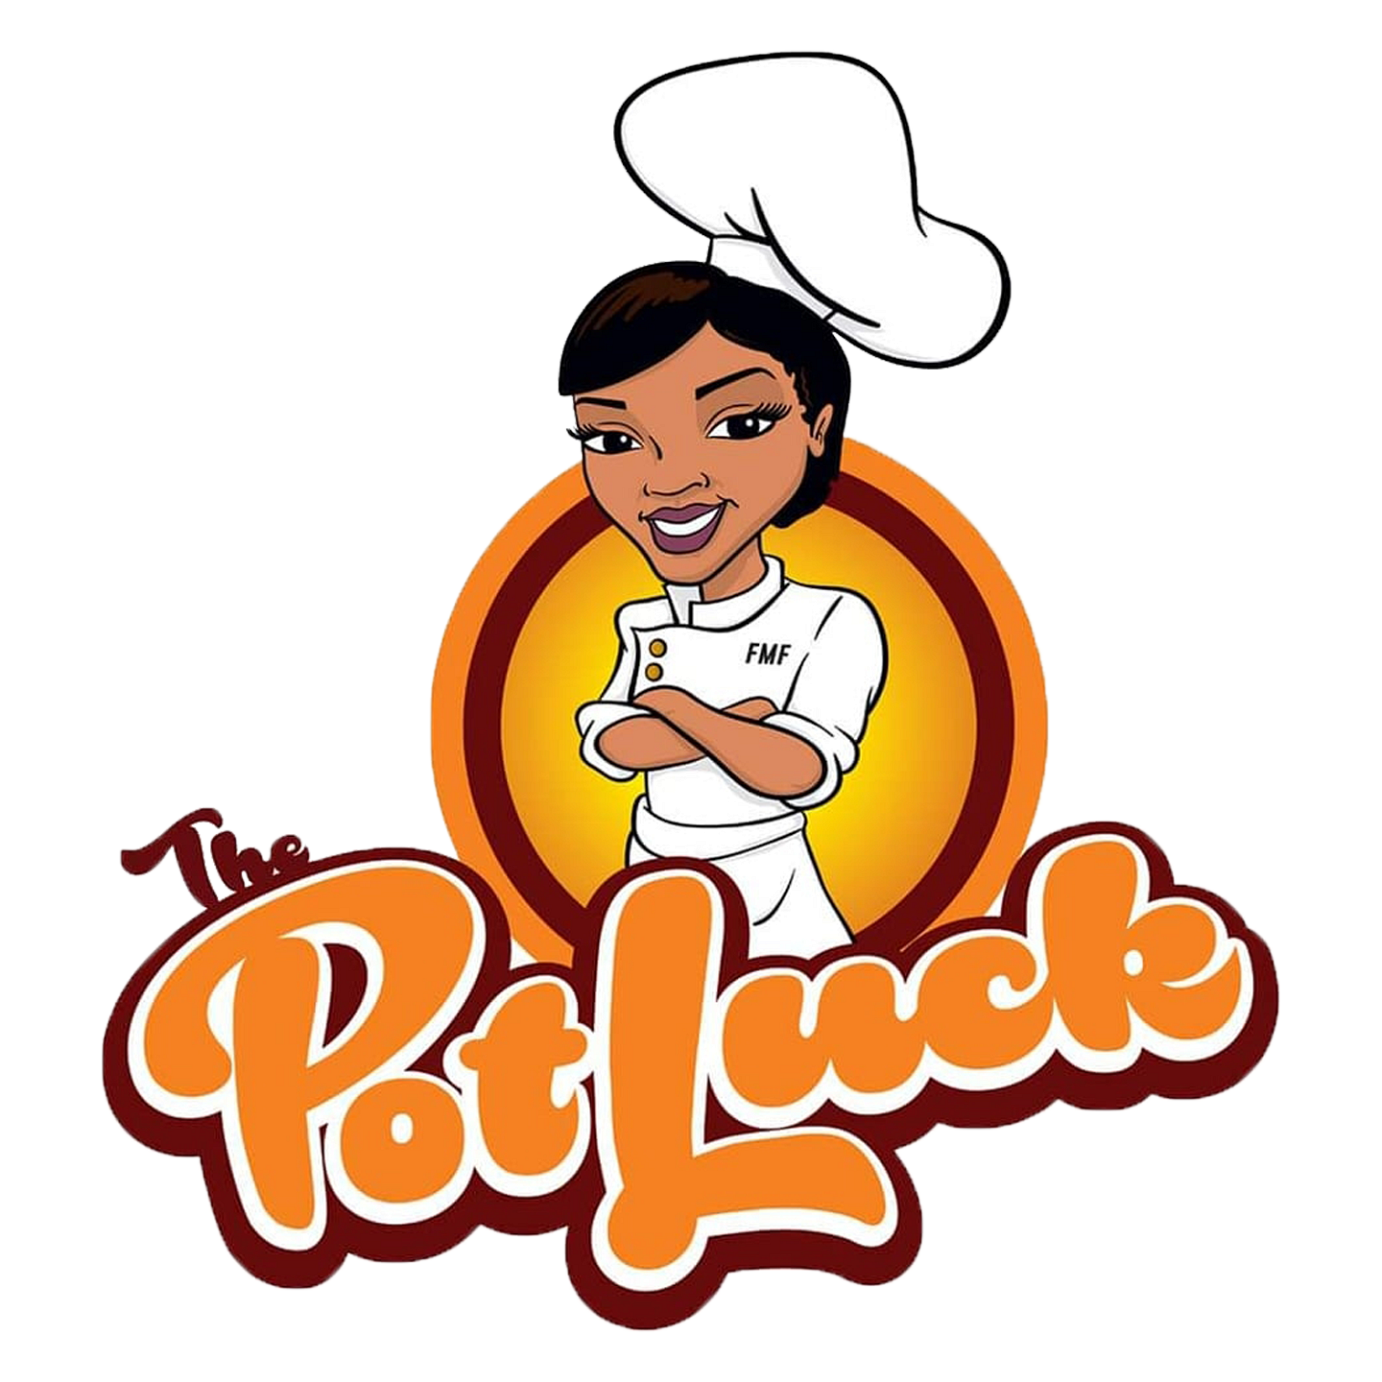 The Potluck logo top